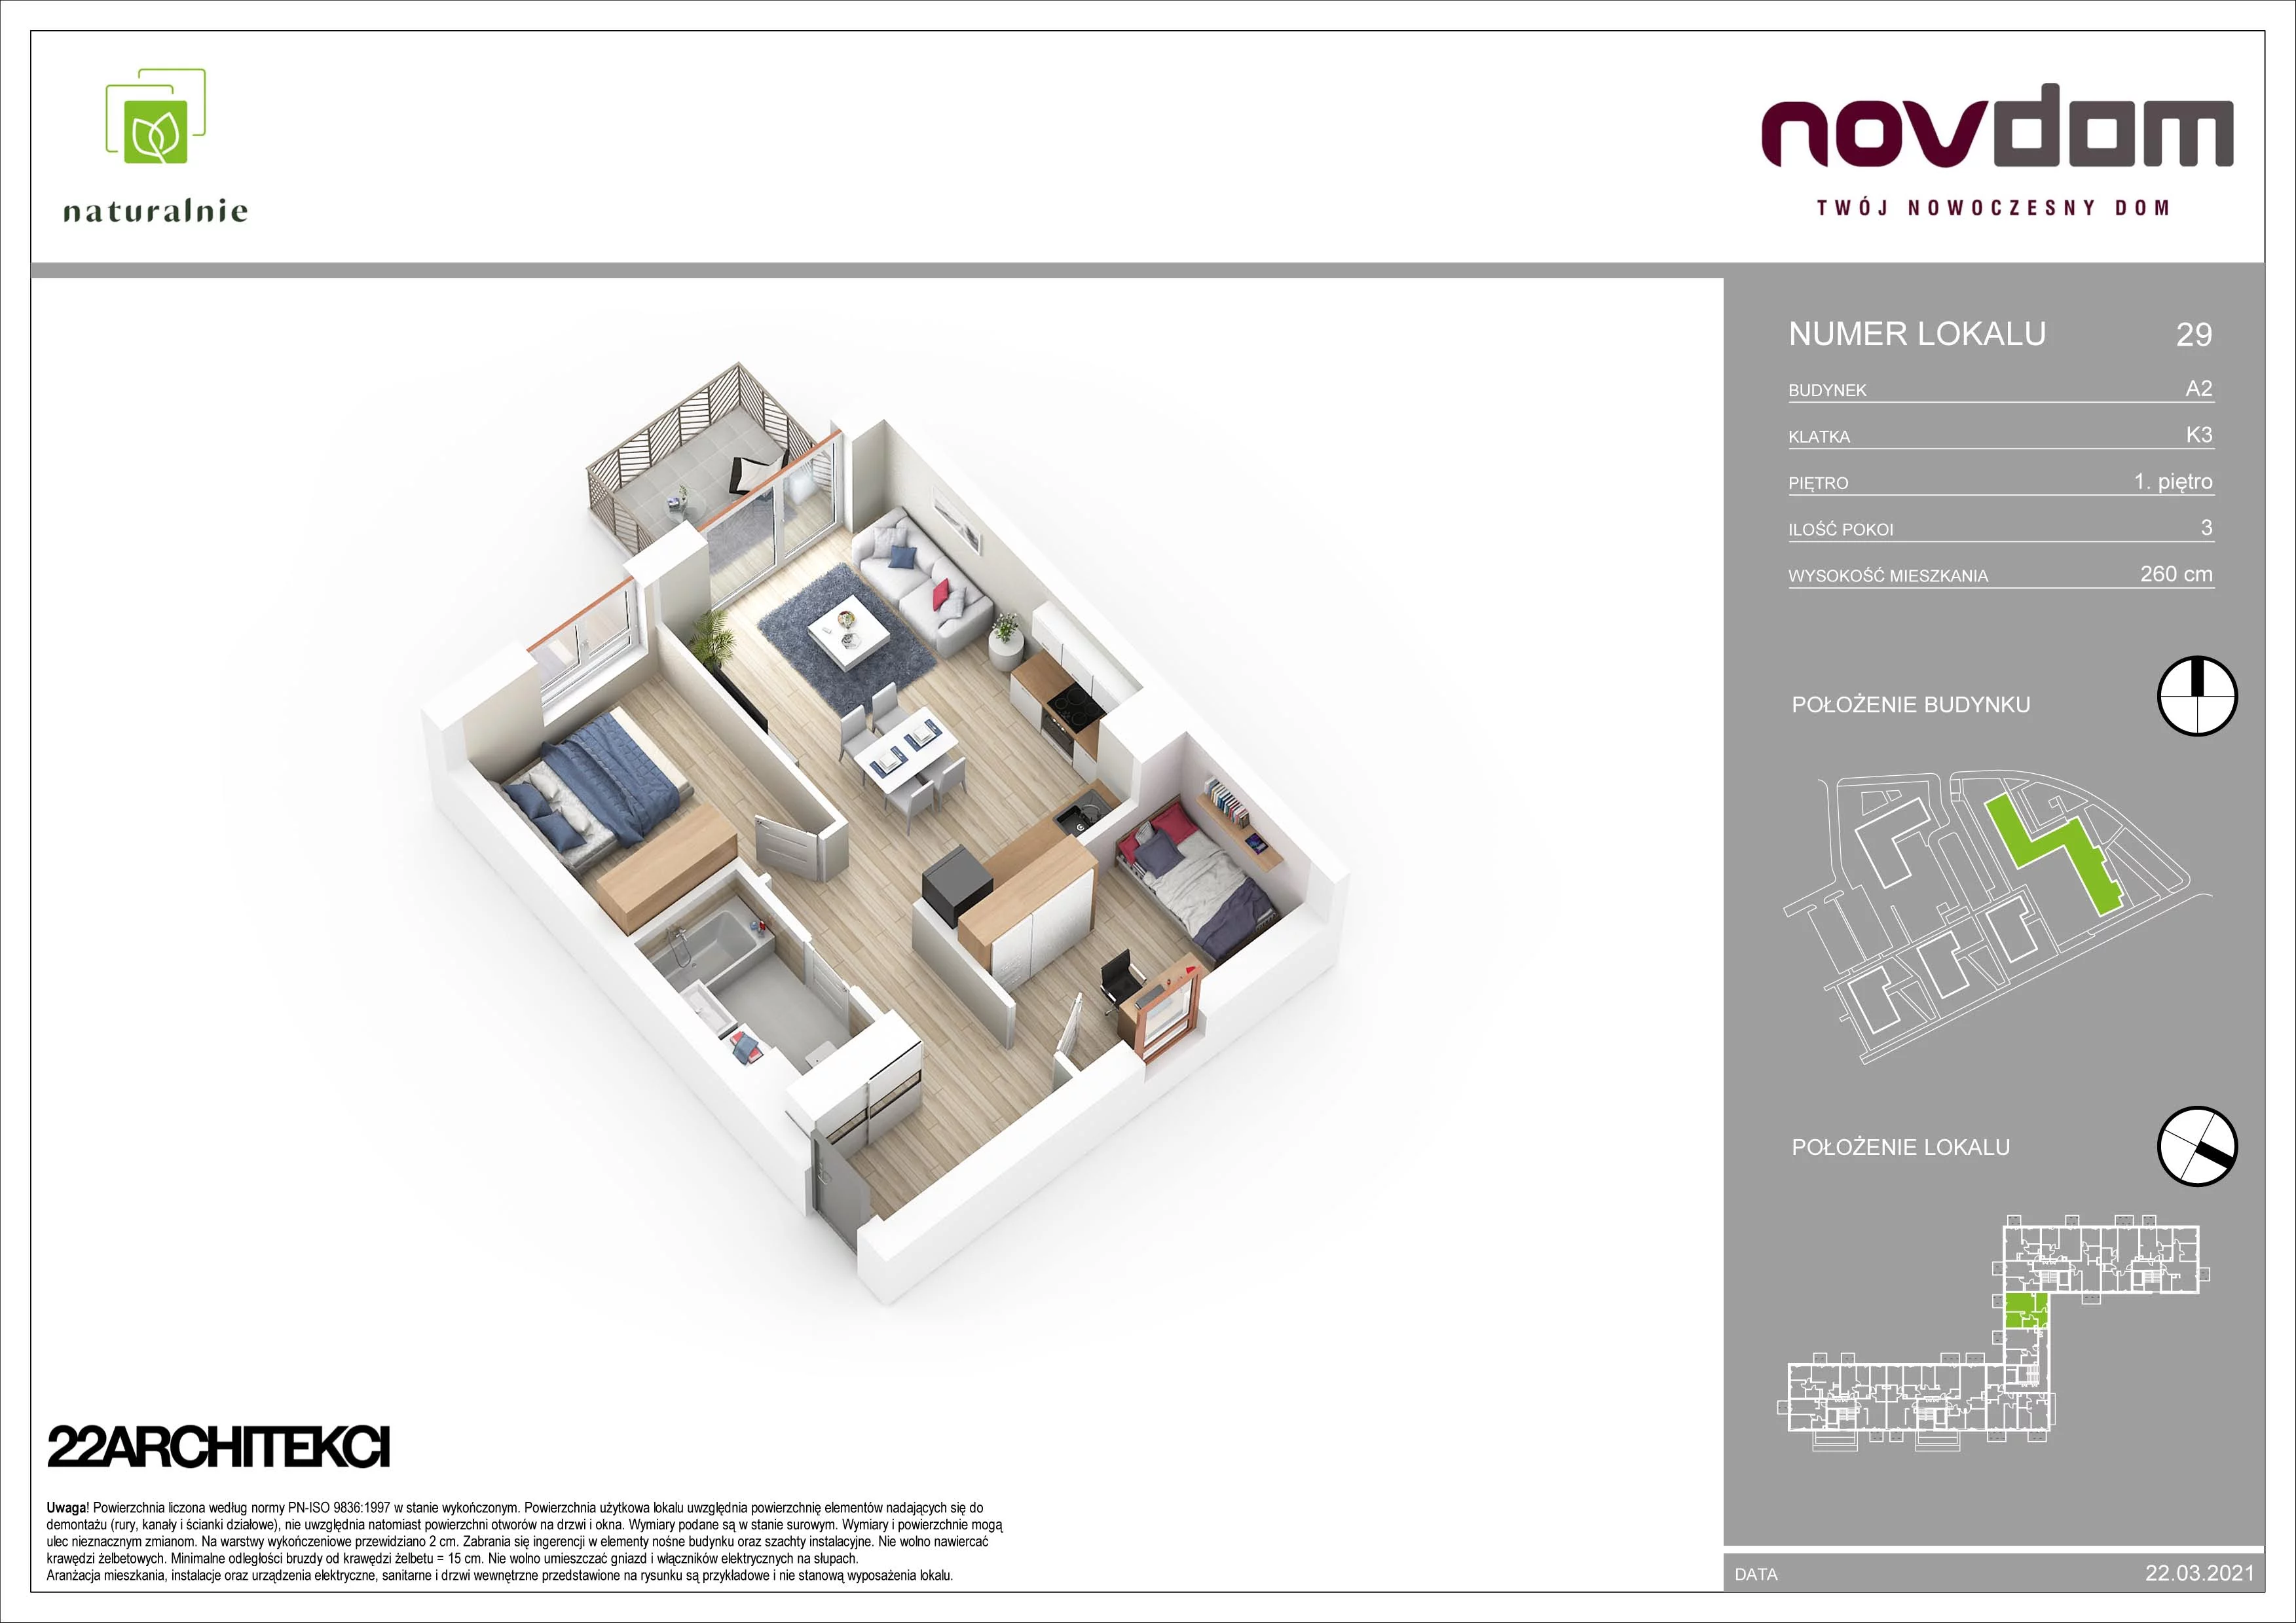 Apartament 55,31 m², piętro 1, oferta nr A2/29, Osiedle Naturalnie, Mława, ul. Nowowiejskiego